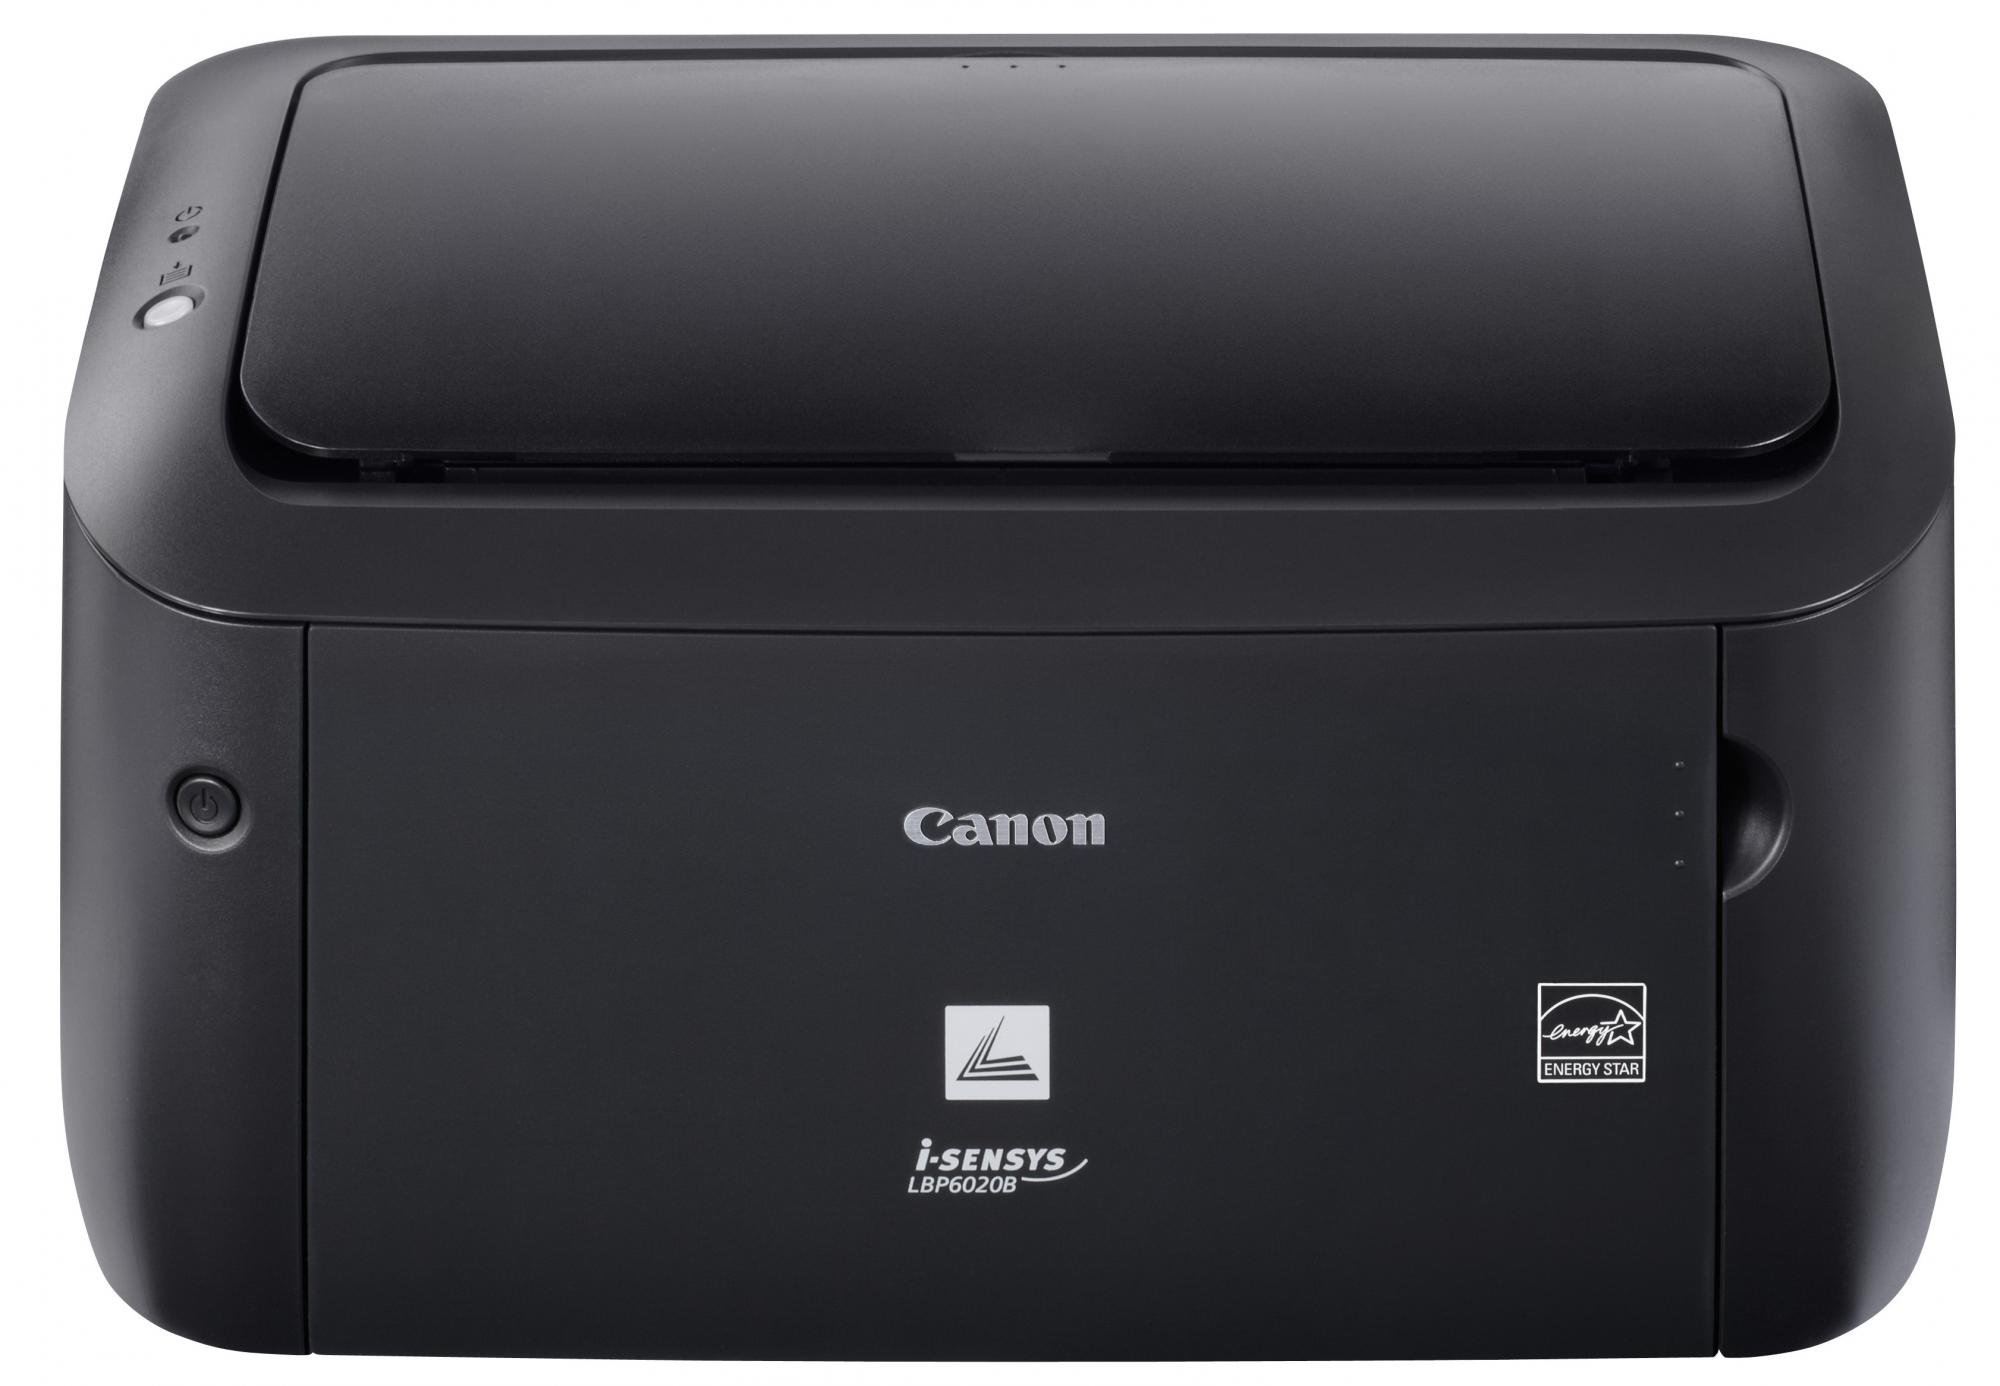 Náplně do tiskárny Canon iSENSYS LBP-6000